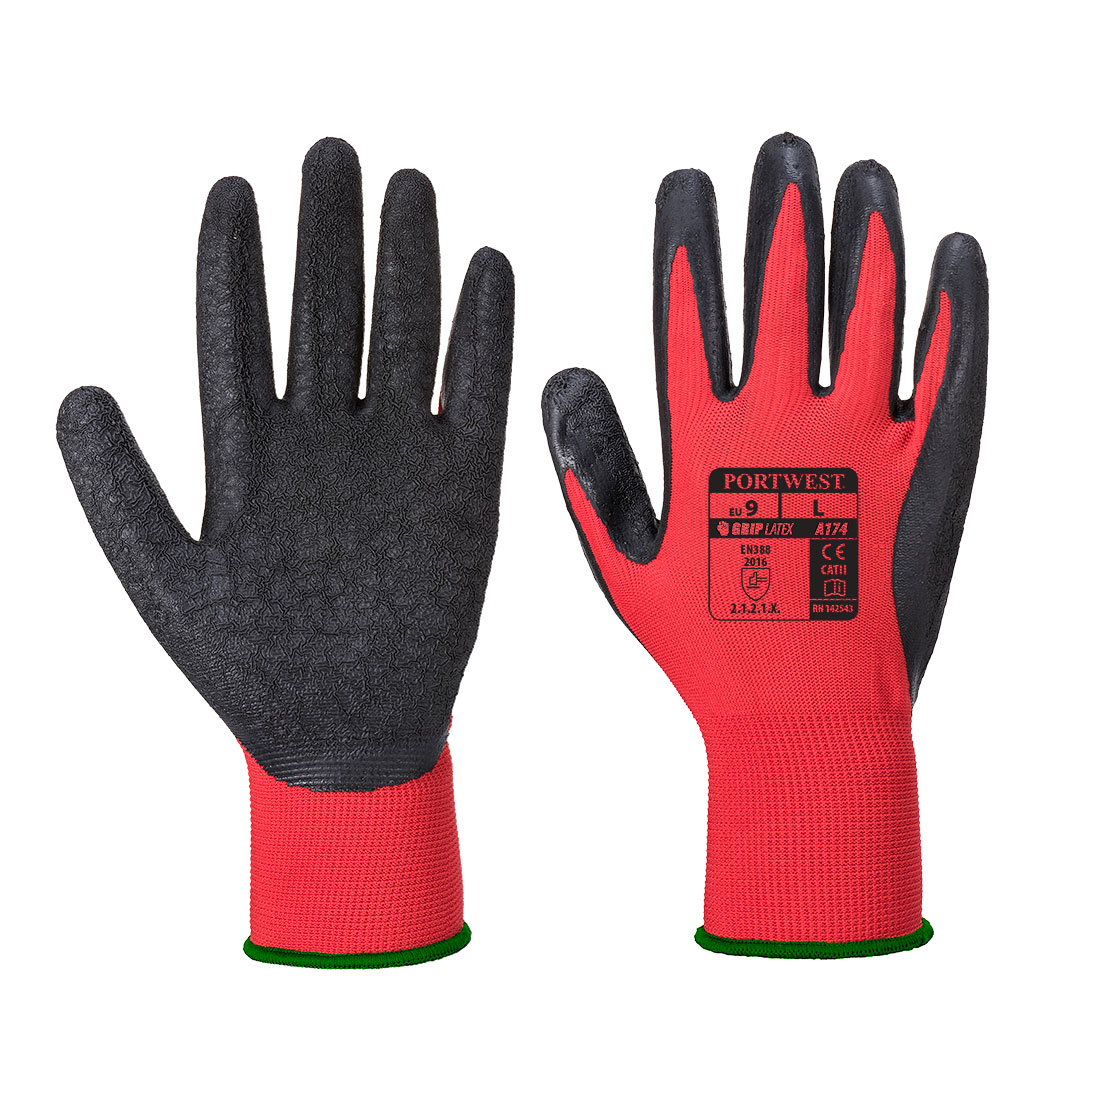 flex grip work gloves